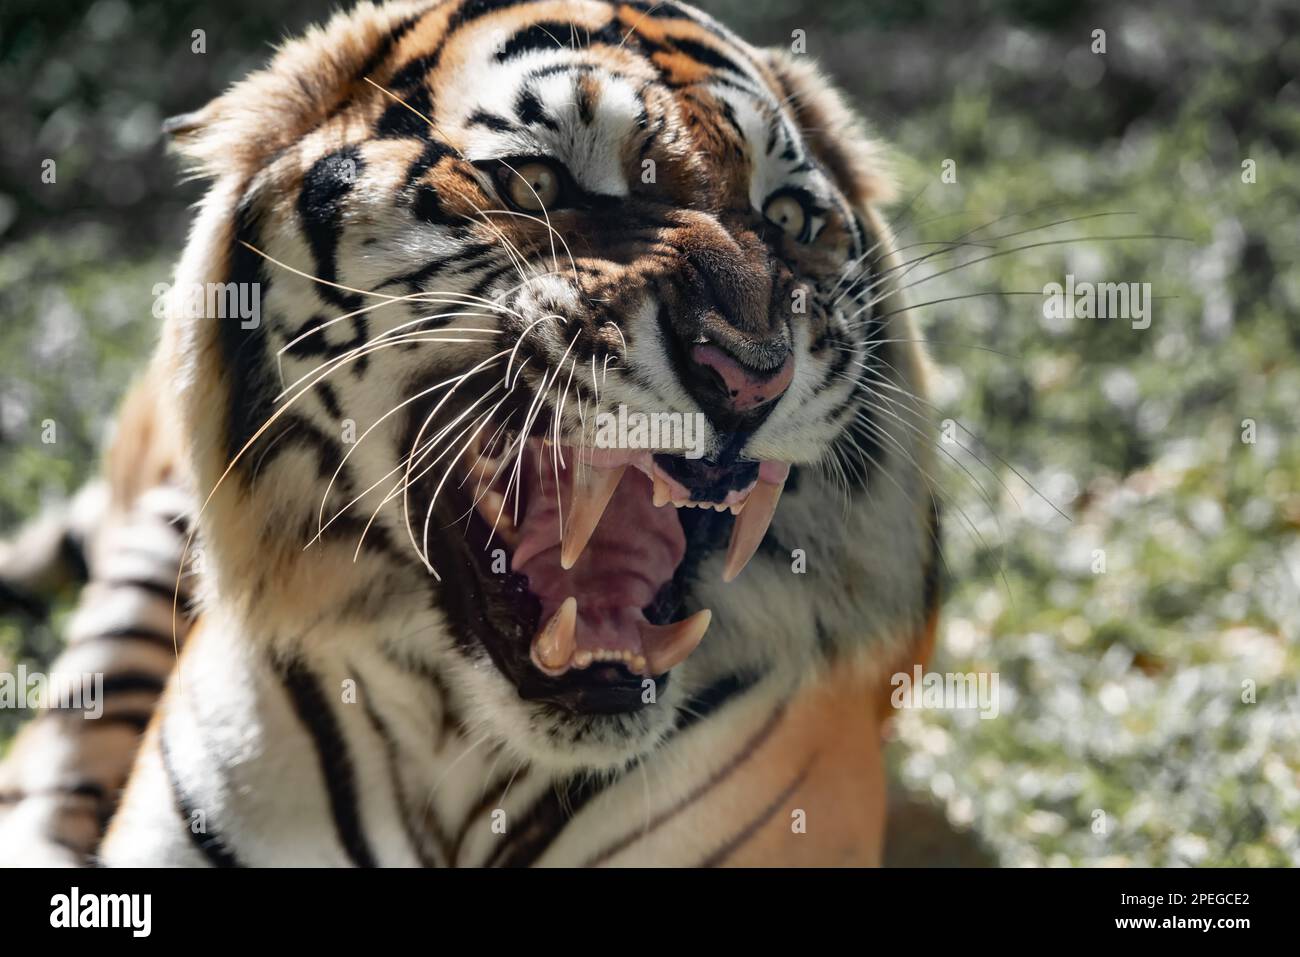 Le gros tigre du bengale grogne le zoo Banque D'Images